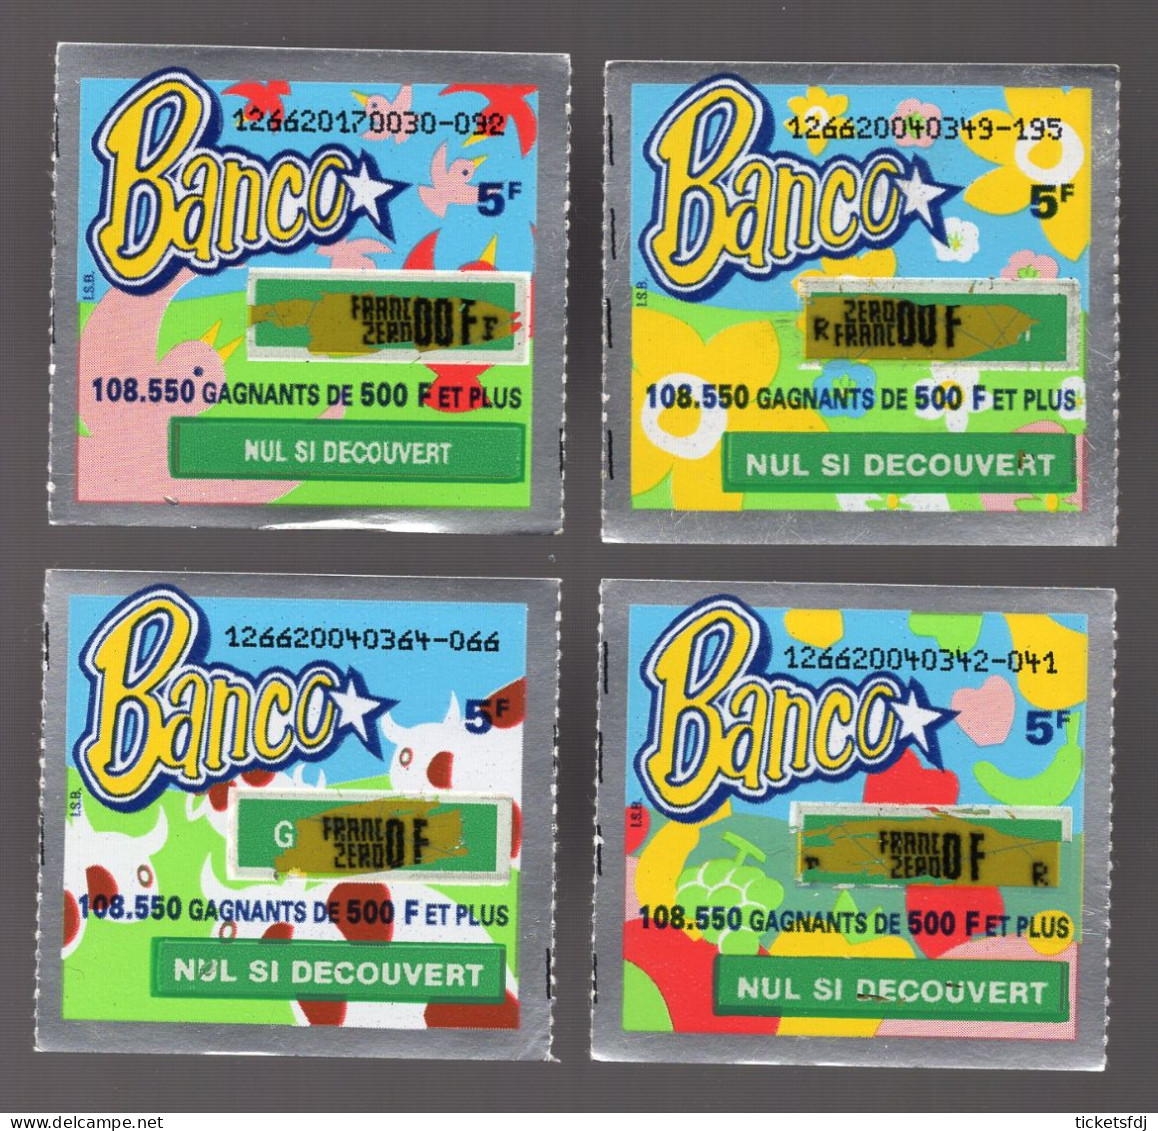 Grattage FDJ - Tickets BANCO En Francs Au Choix (12661-12662-12663-12664-12665) FRANCAISE DES JEUX - Lottery Tickets